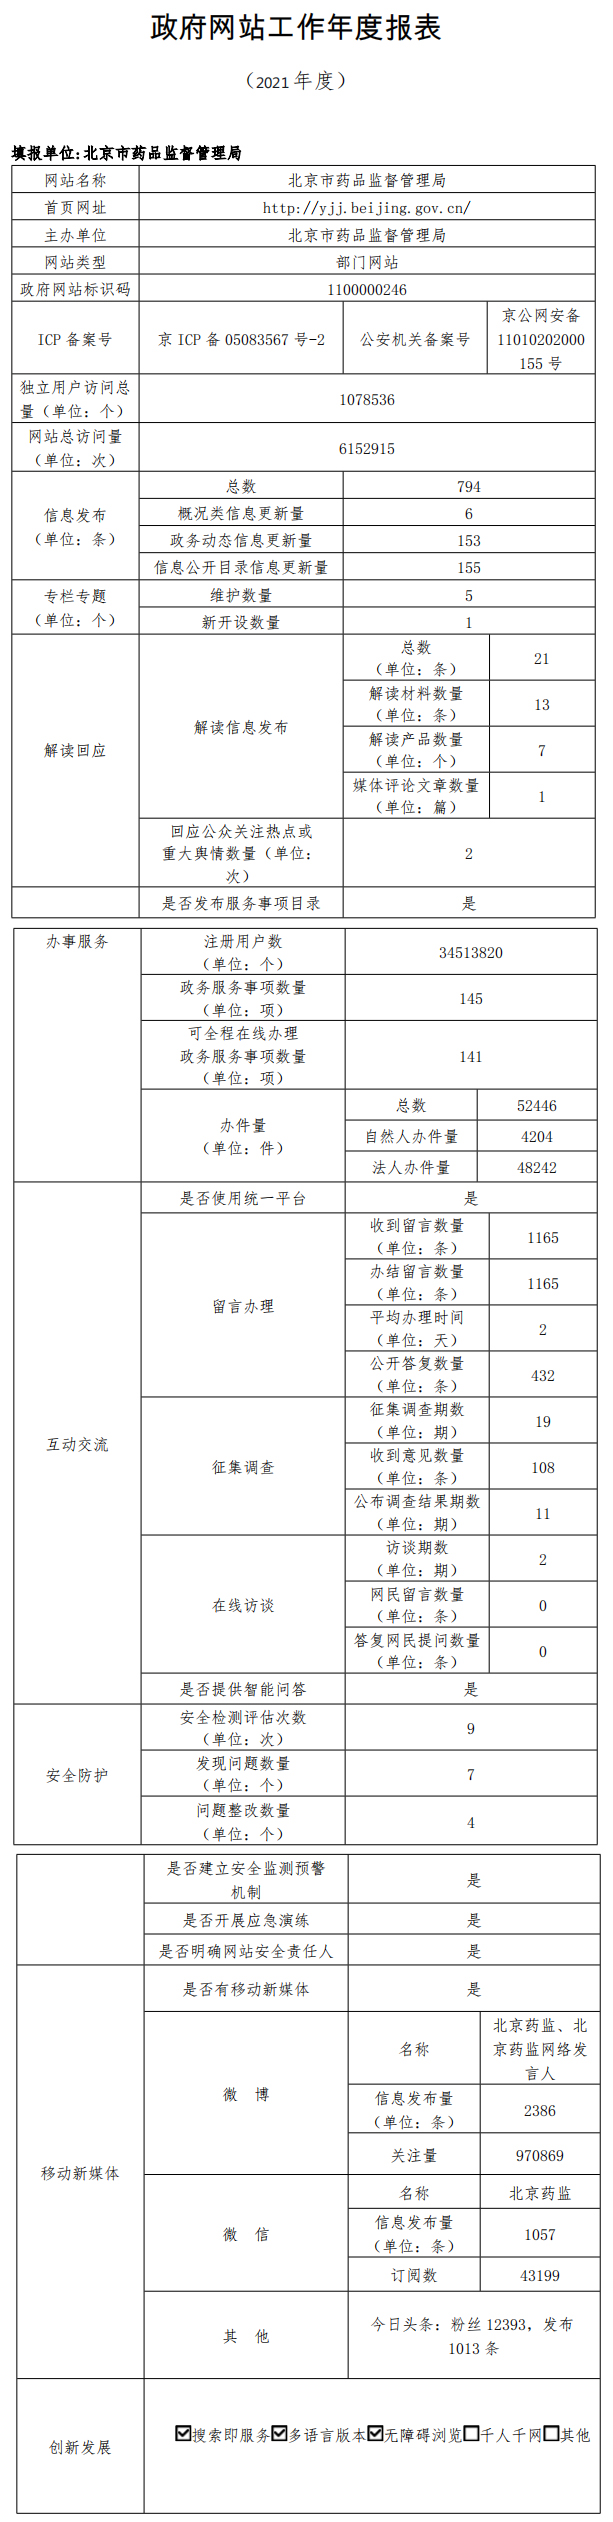 北京市药品监督管理局2021年政府网站年度工作报表